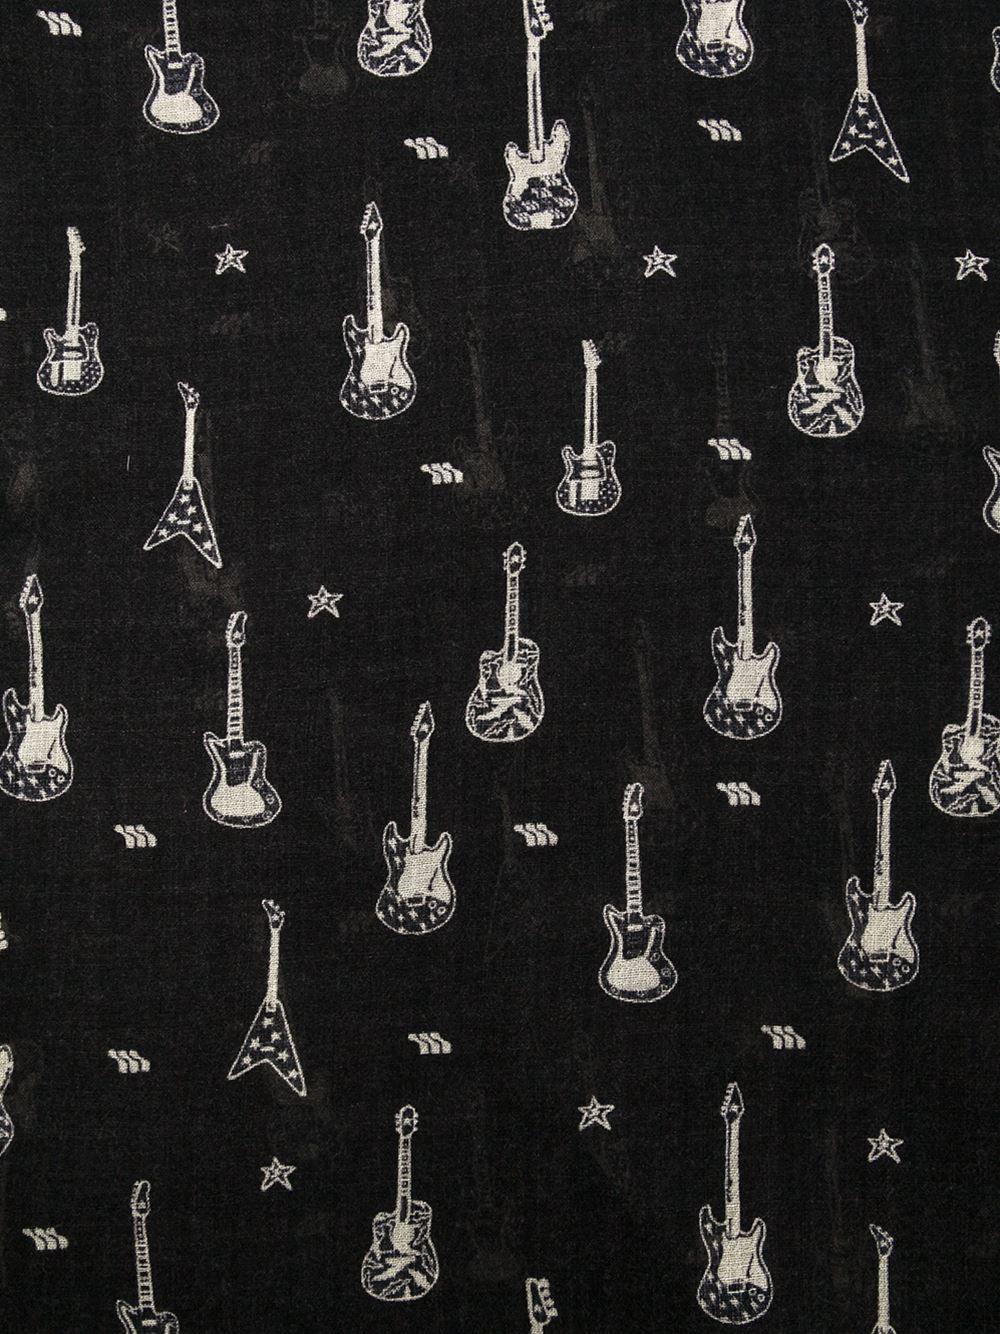 Yves Saint Laurent Wallpaper, Picture